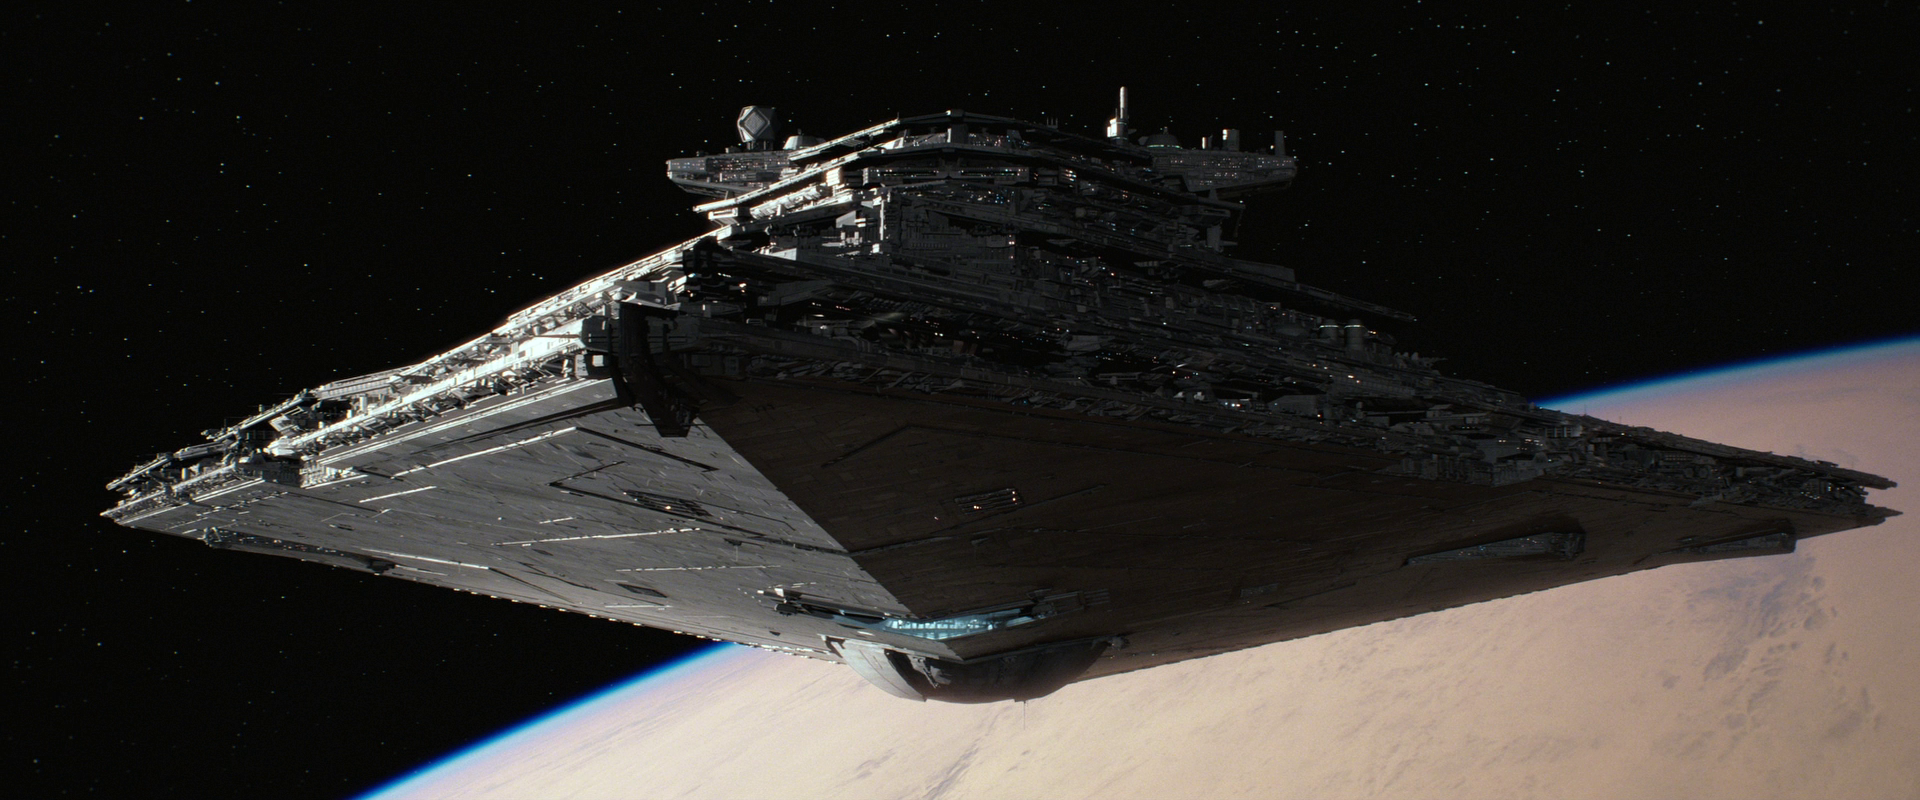 First Order Resurgent Class Star Destroyer. Star Wars Picture, Star Wars Ships, Star Wars Vehicles